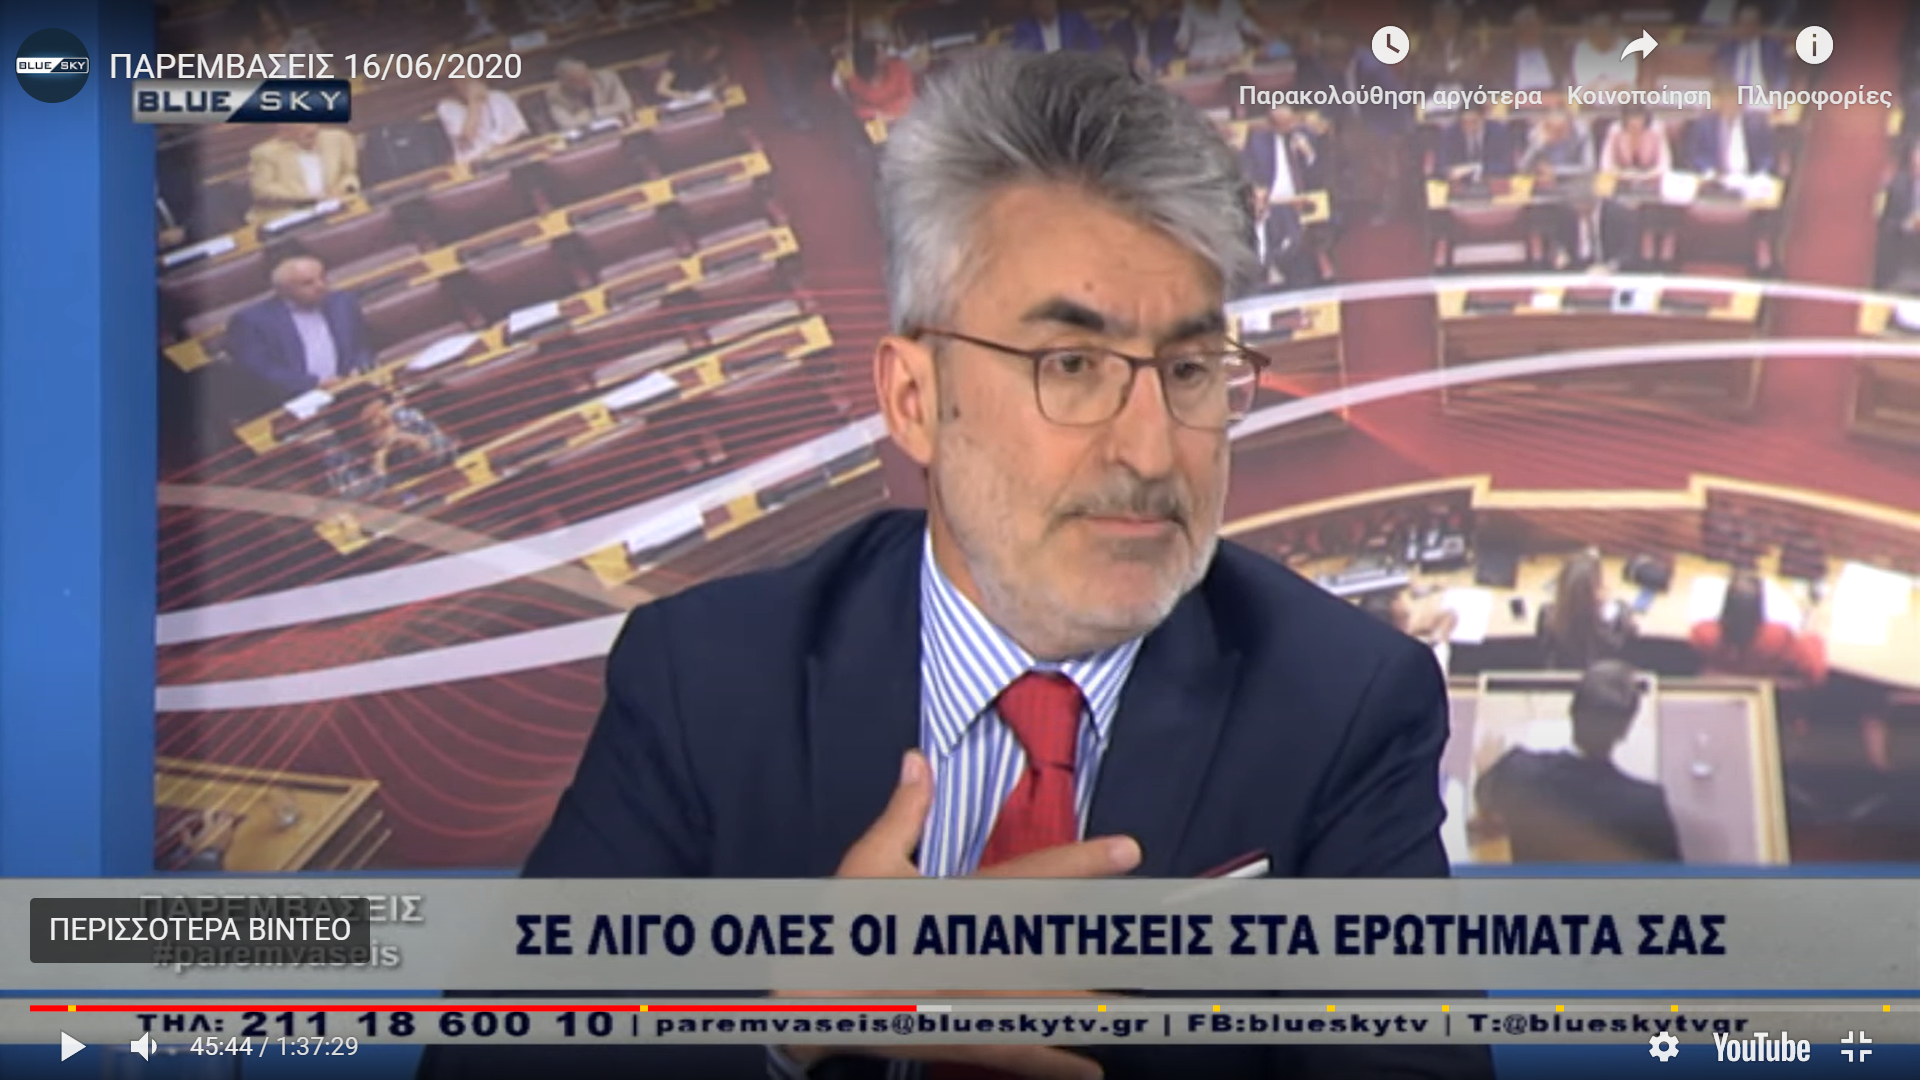 Θ. Ξανθόπουλος: Κακός σχεδιασμός και αλαλούμ από κυβέρνηση στον τουρισμό, πολιτική και νομική ήττα της πλειοψηφίας στην Προκαταρκτική